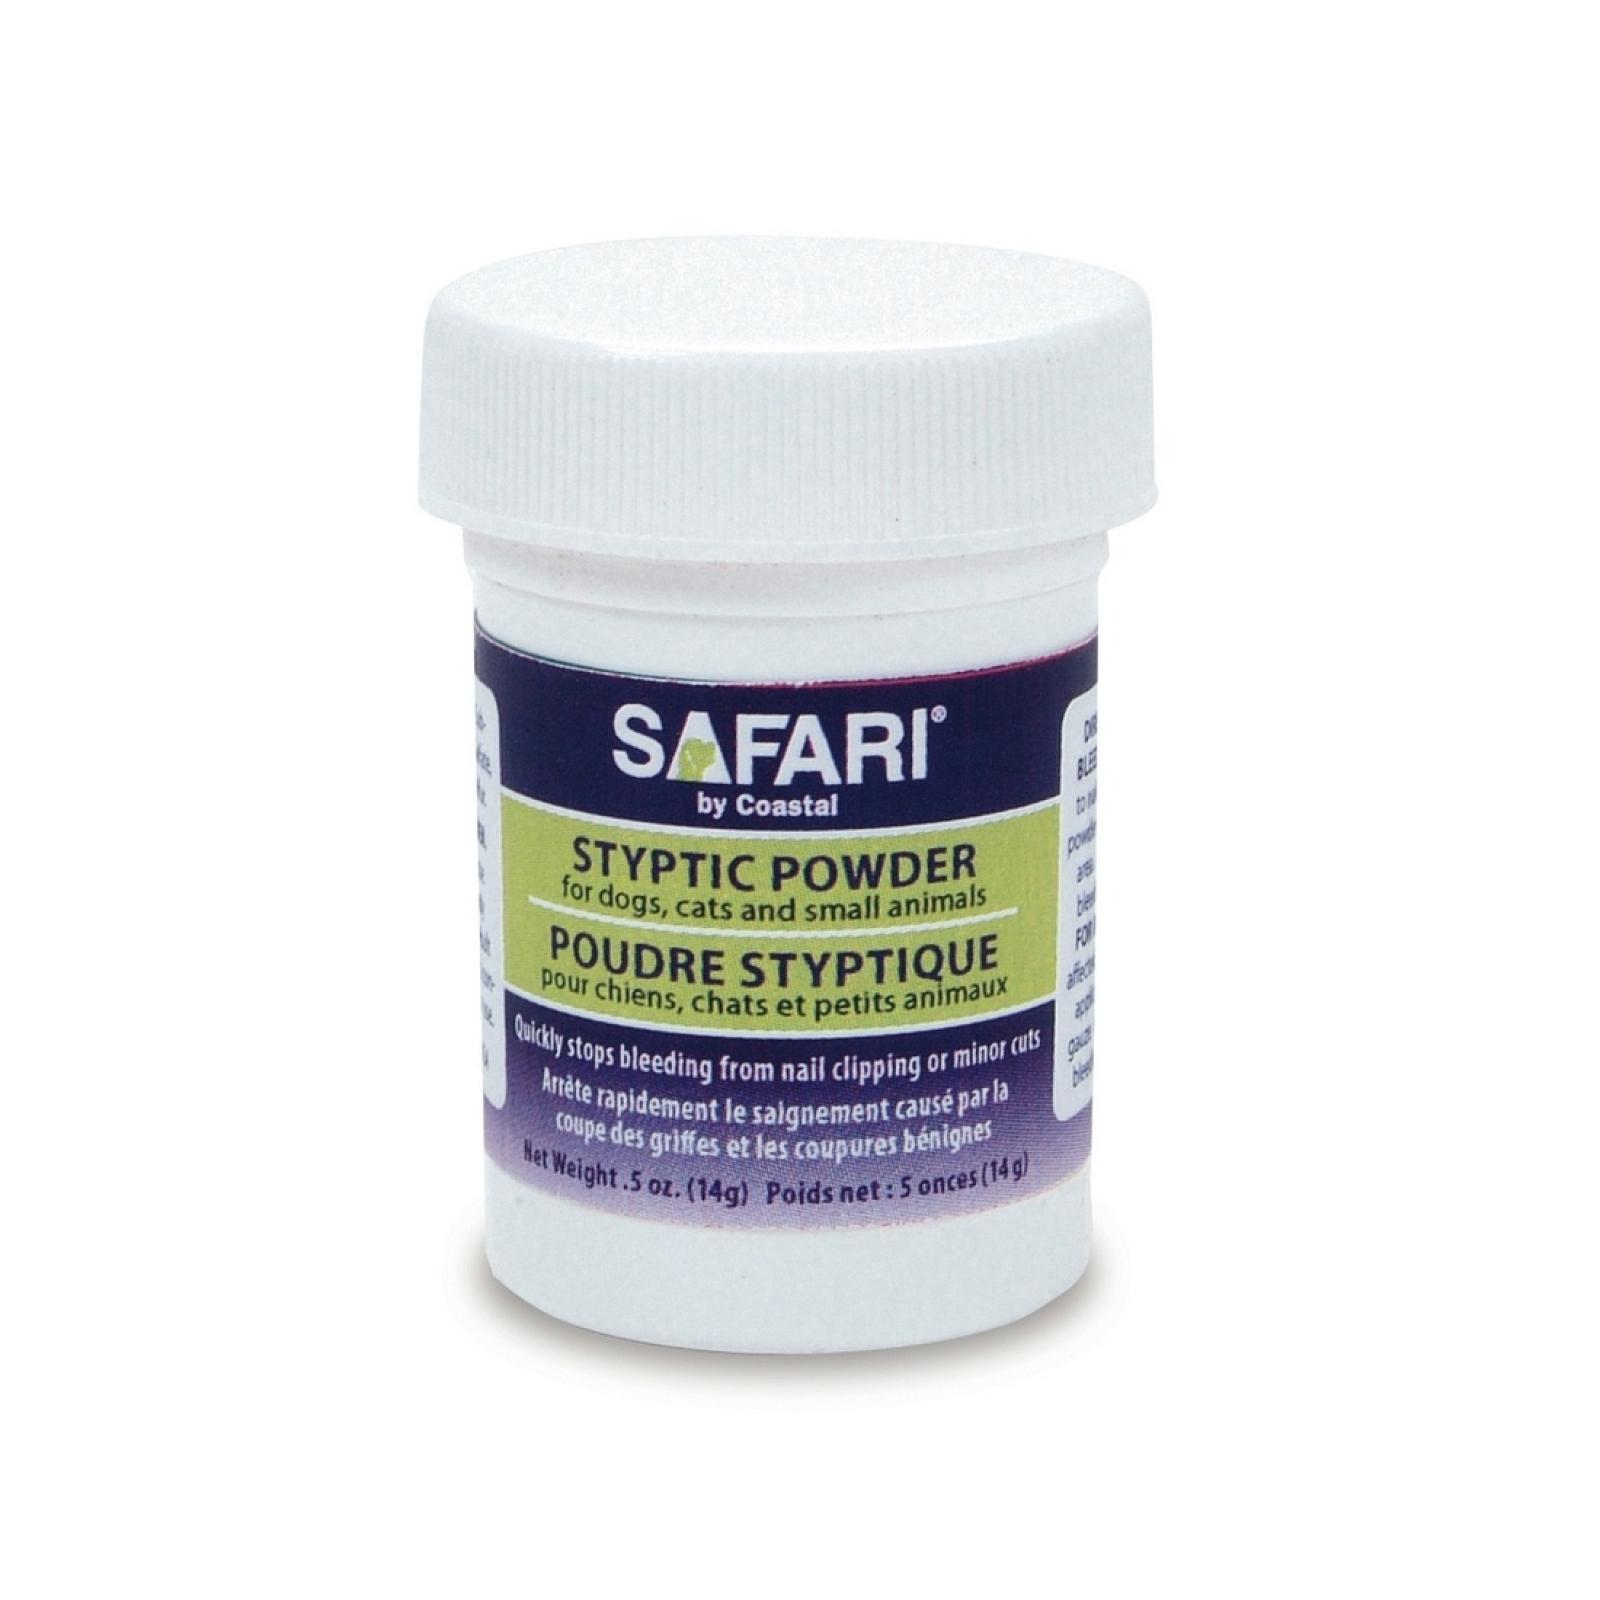 Safari Styptic Powder